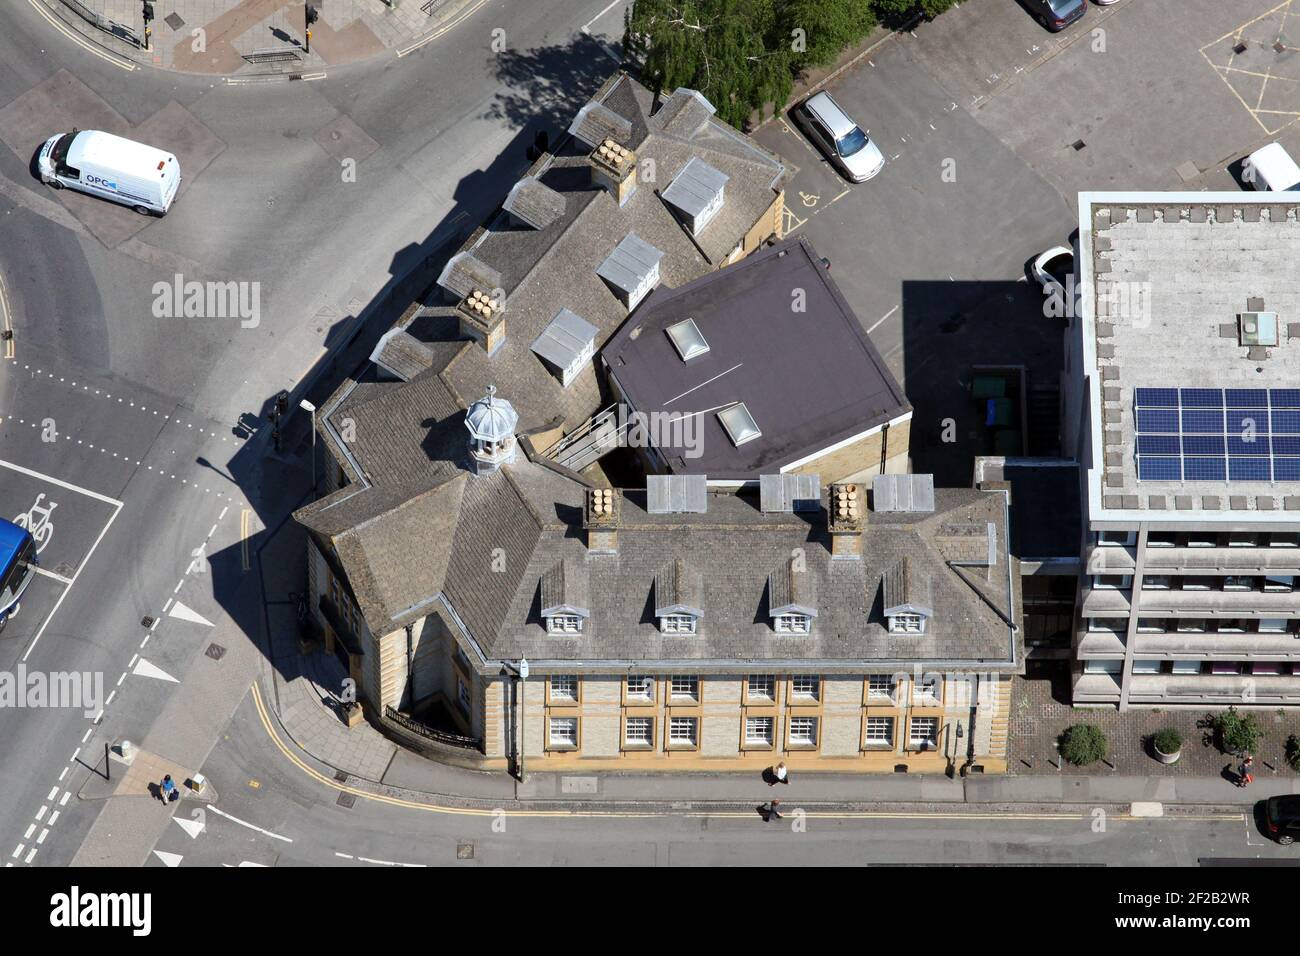 Vue aérienne du bureau d'enregistrement d'Oxford (bureau d'enregistrement), Oxfordshire Banque D'Images